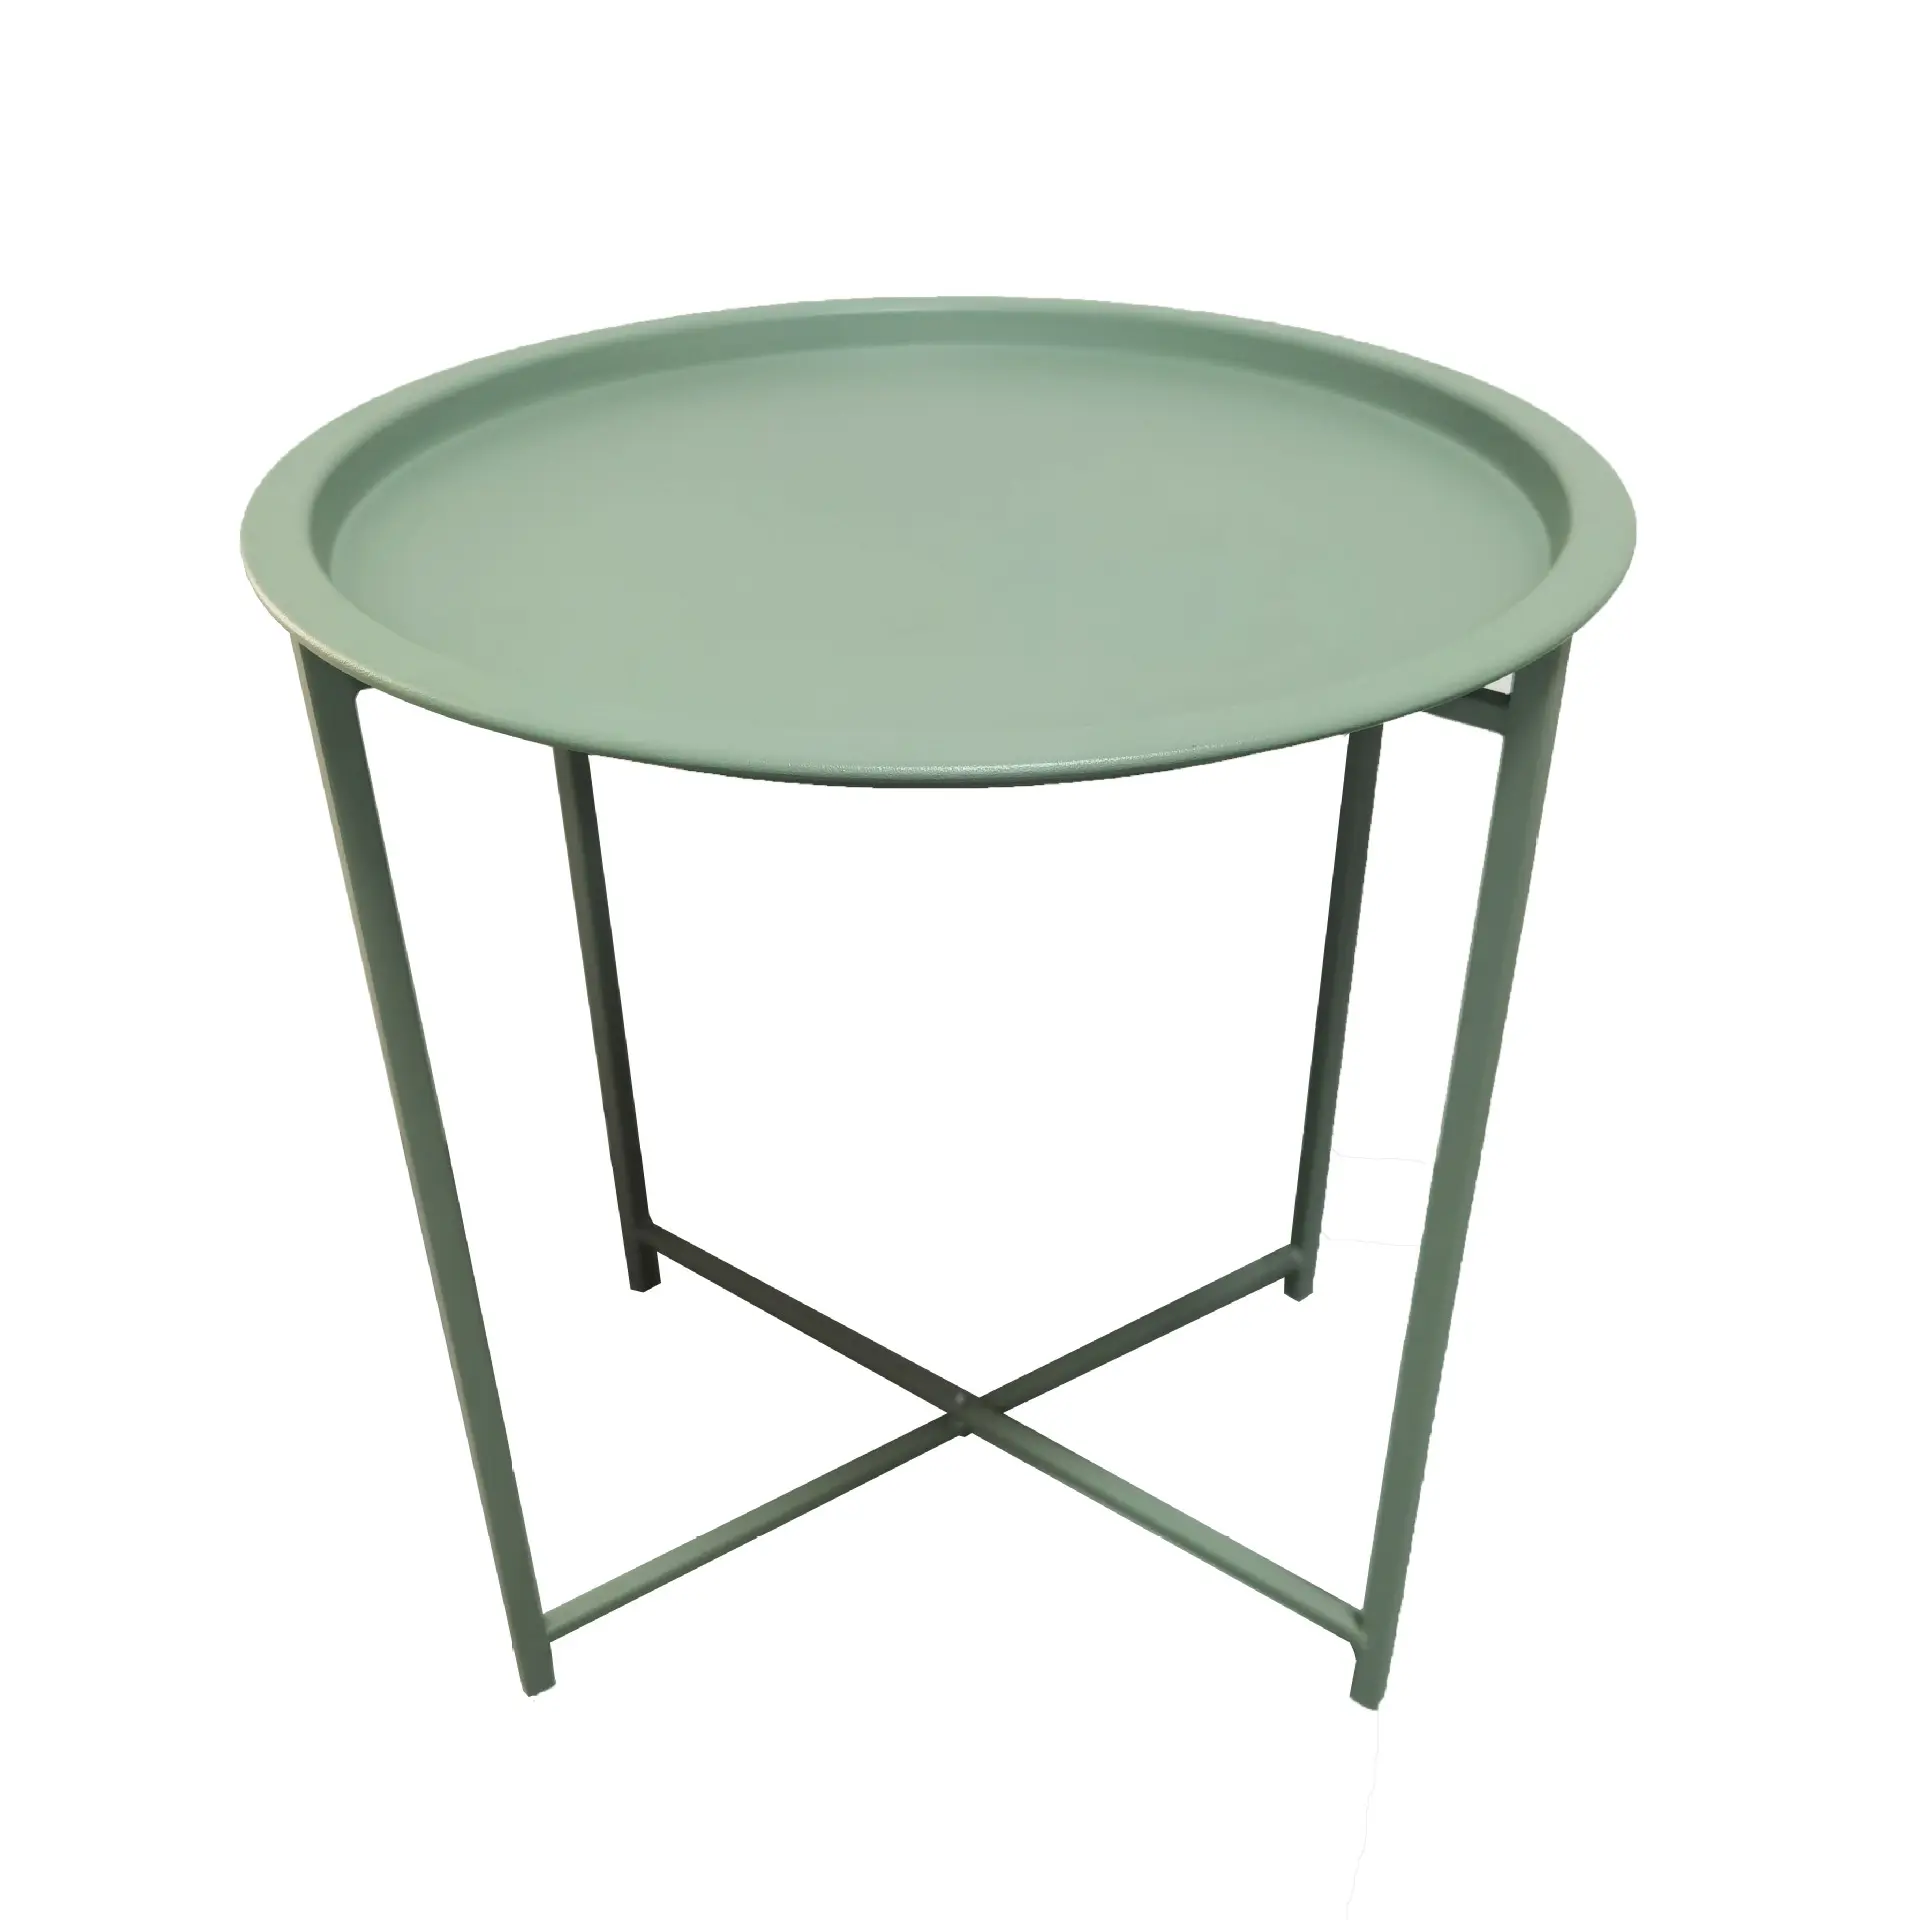 Venta caliente diseño Simple muebles de exterior jardín balcón mesa de centro duradera redonda portátil Metal Bistro mesa plegable